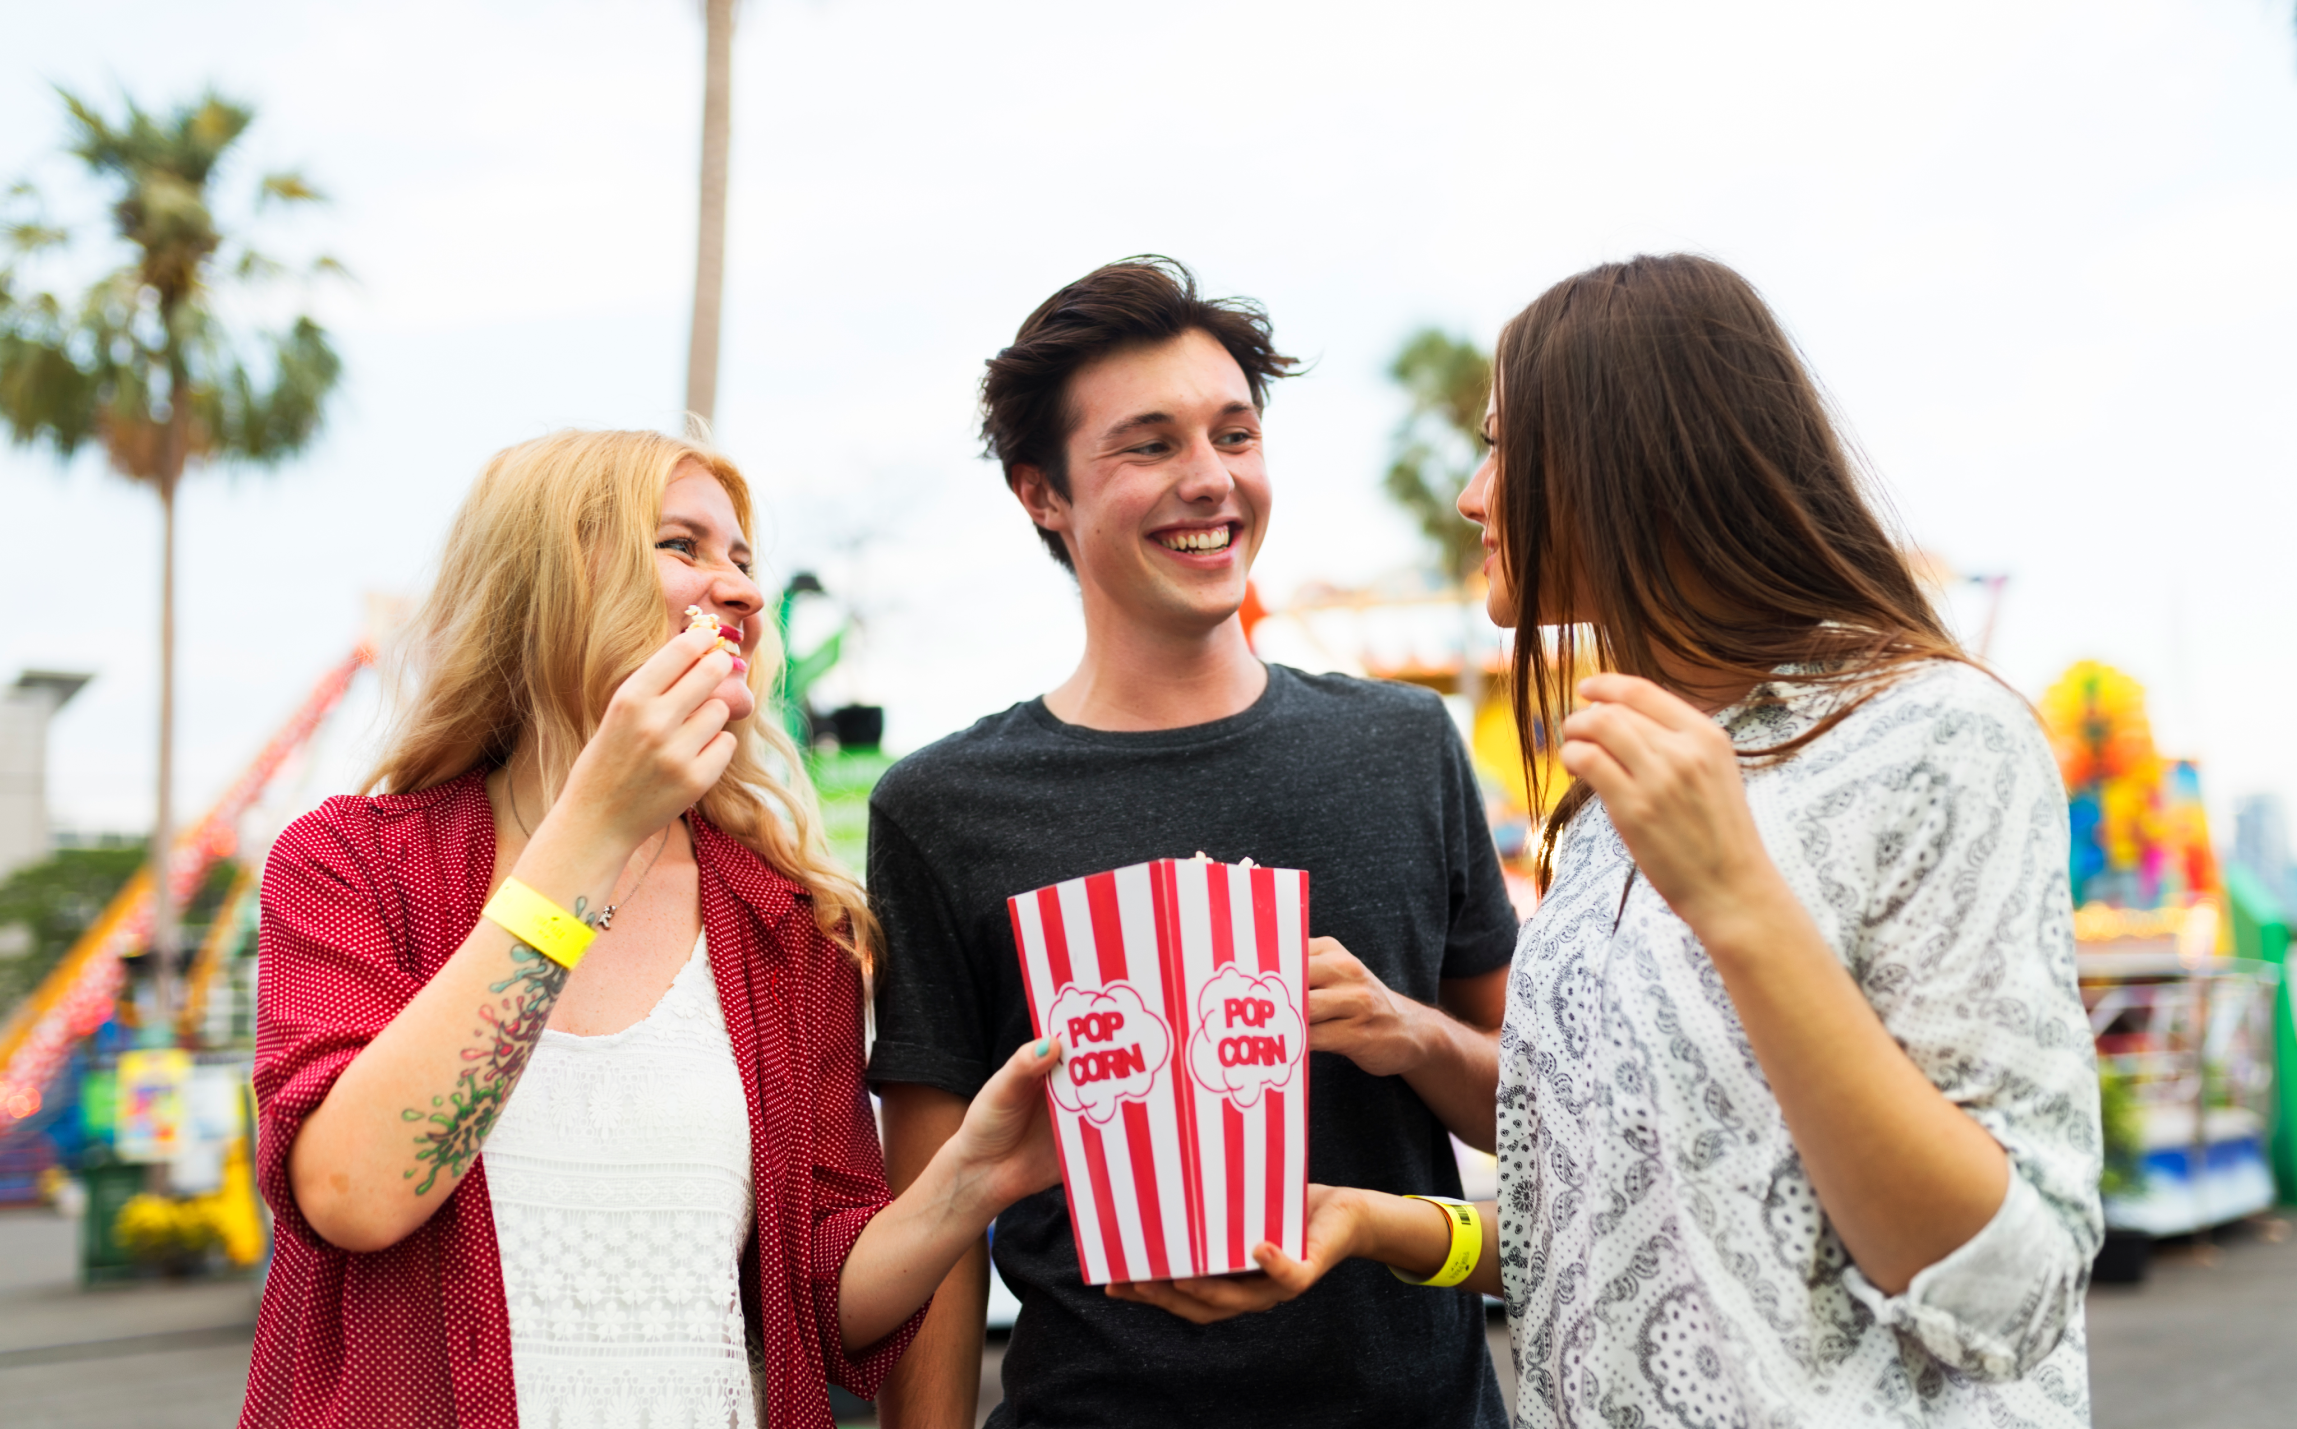 Tre unge mennesker spiser popcorn i en fornøyelsespark.